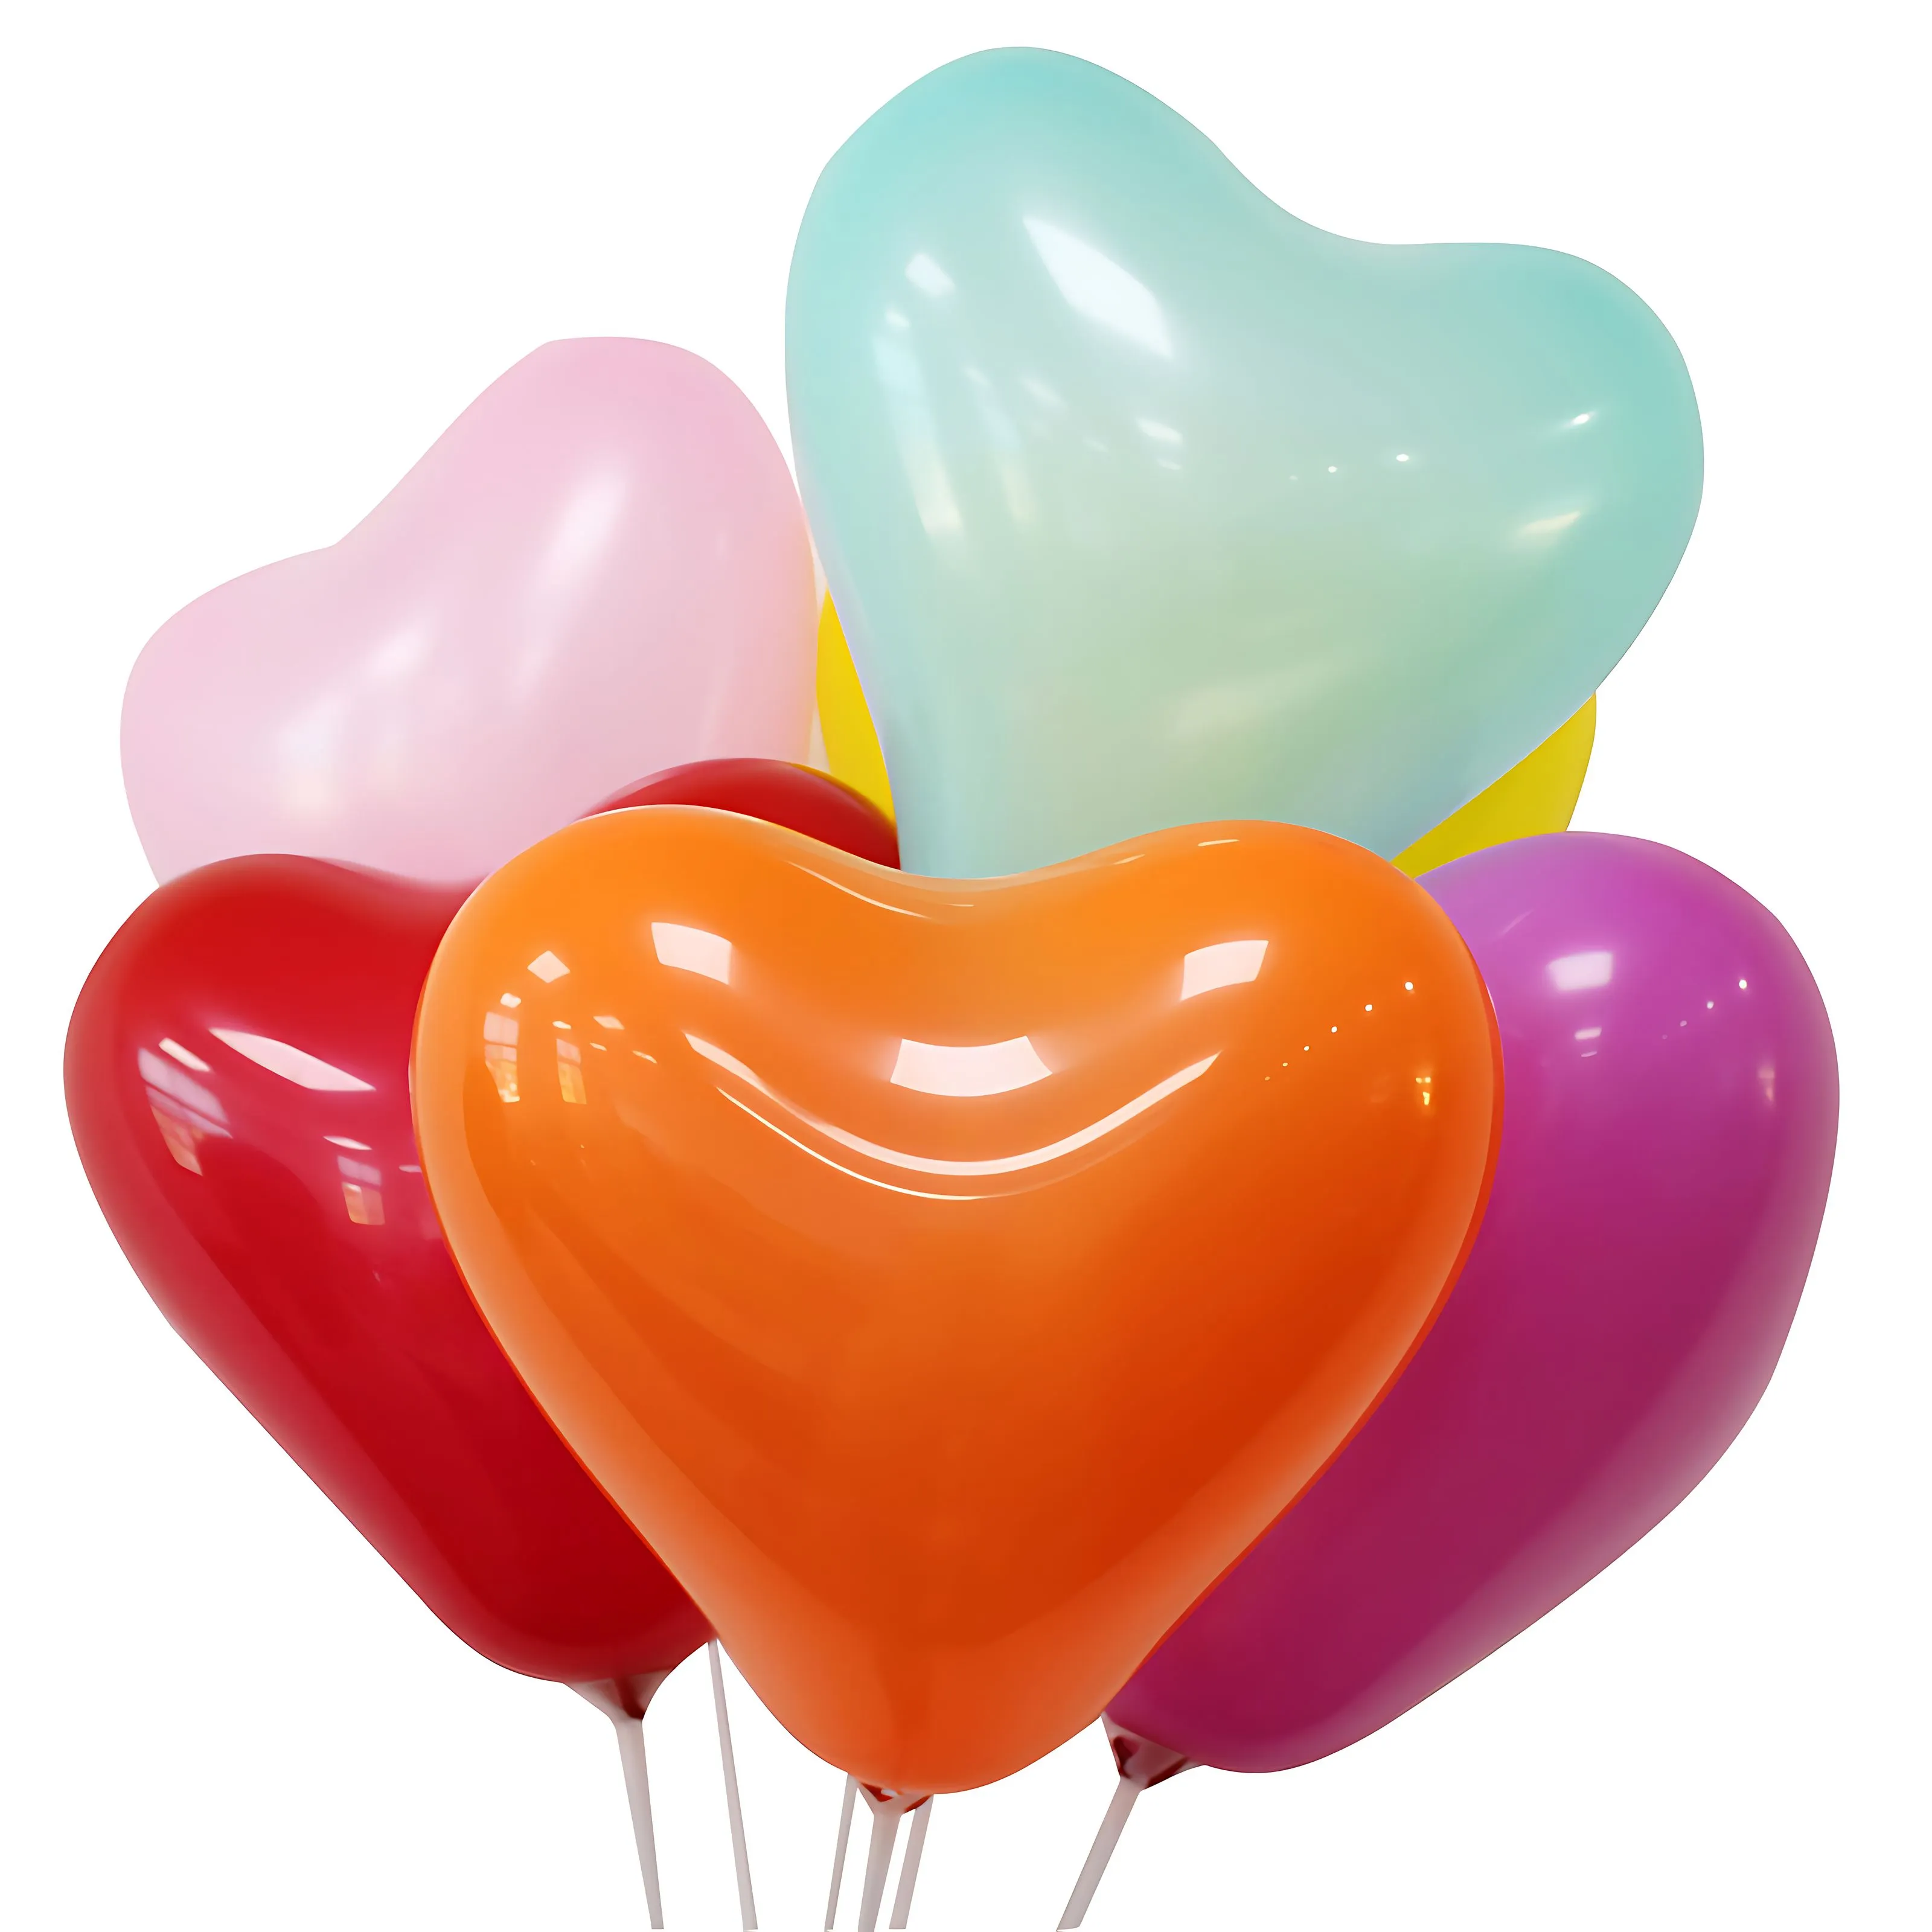 Luckyballoons Porte-ballons personnalisés Ballons pré-fabriqués Ballon à pièces Cadeau pour fille garçon enfant enfants femmes homme